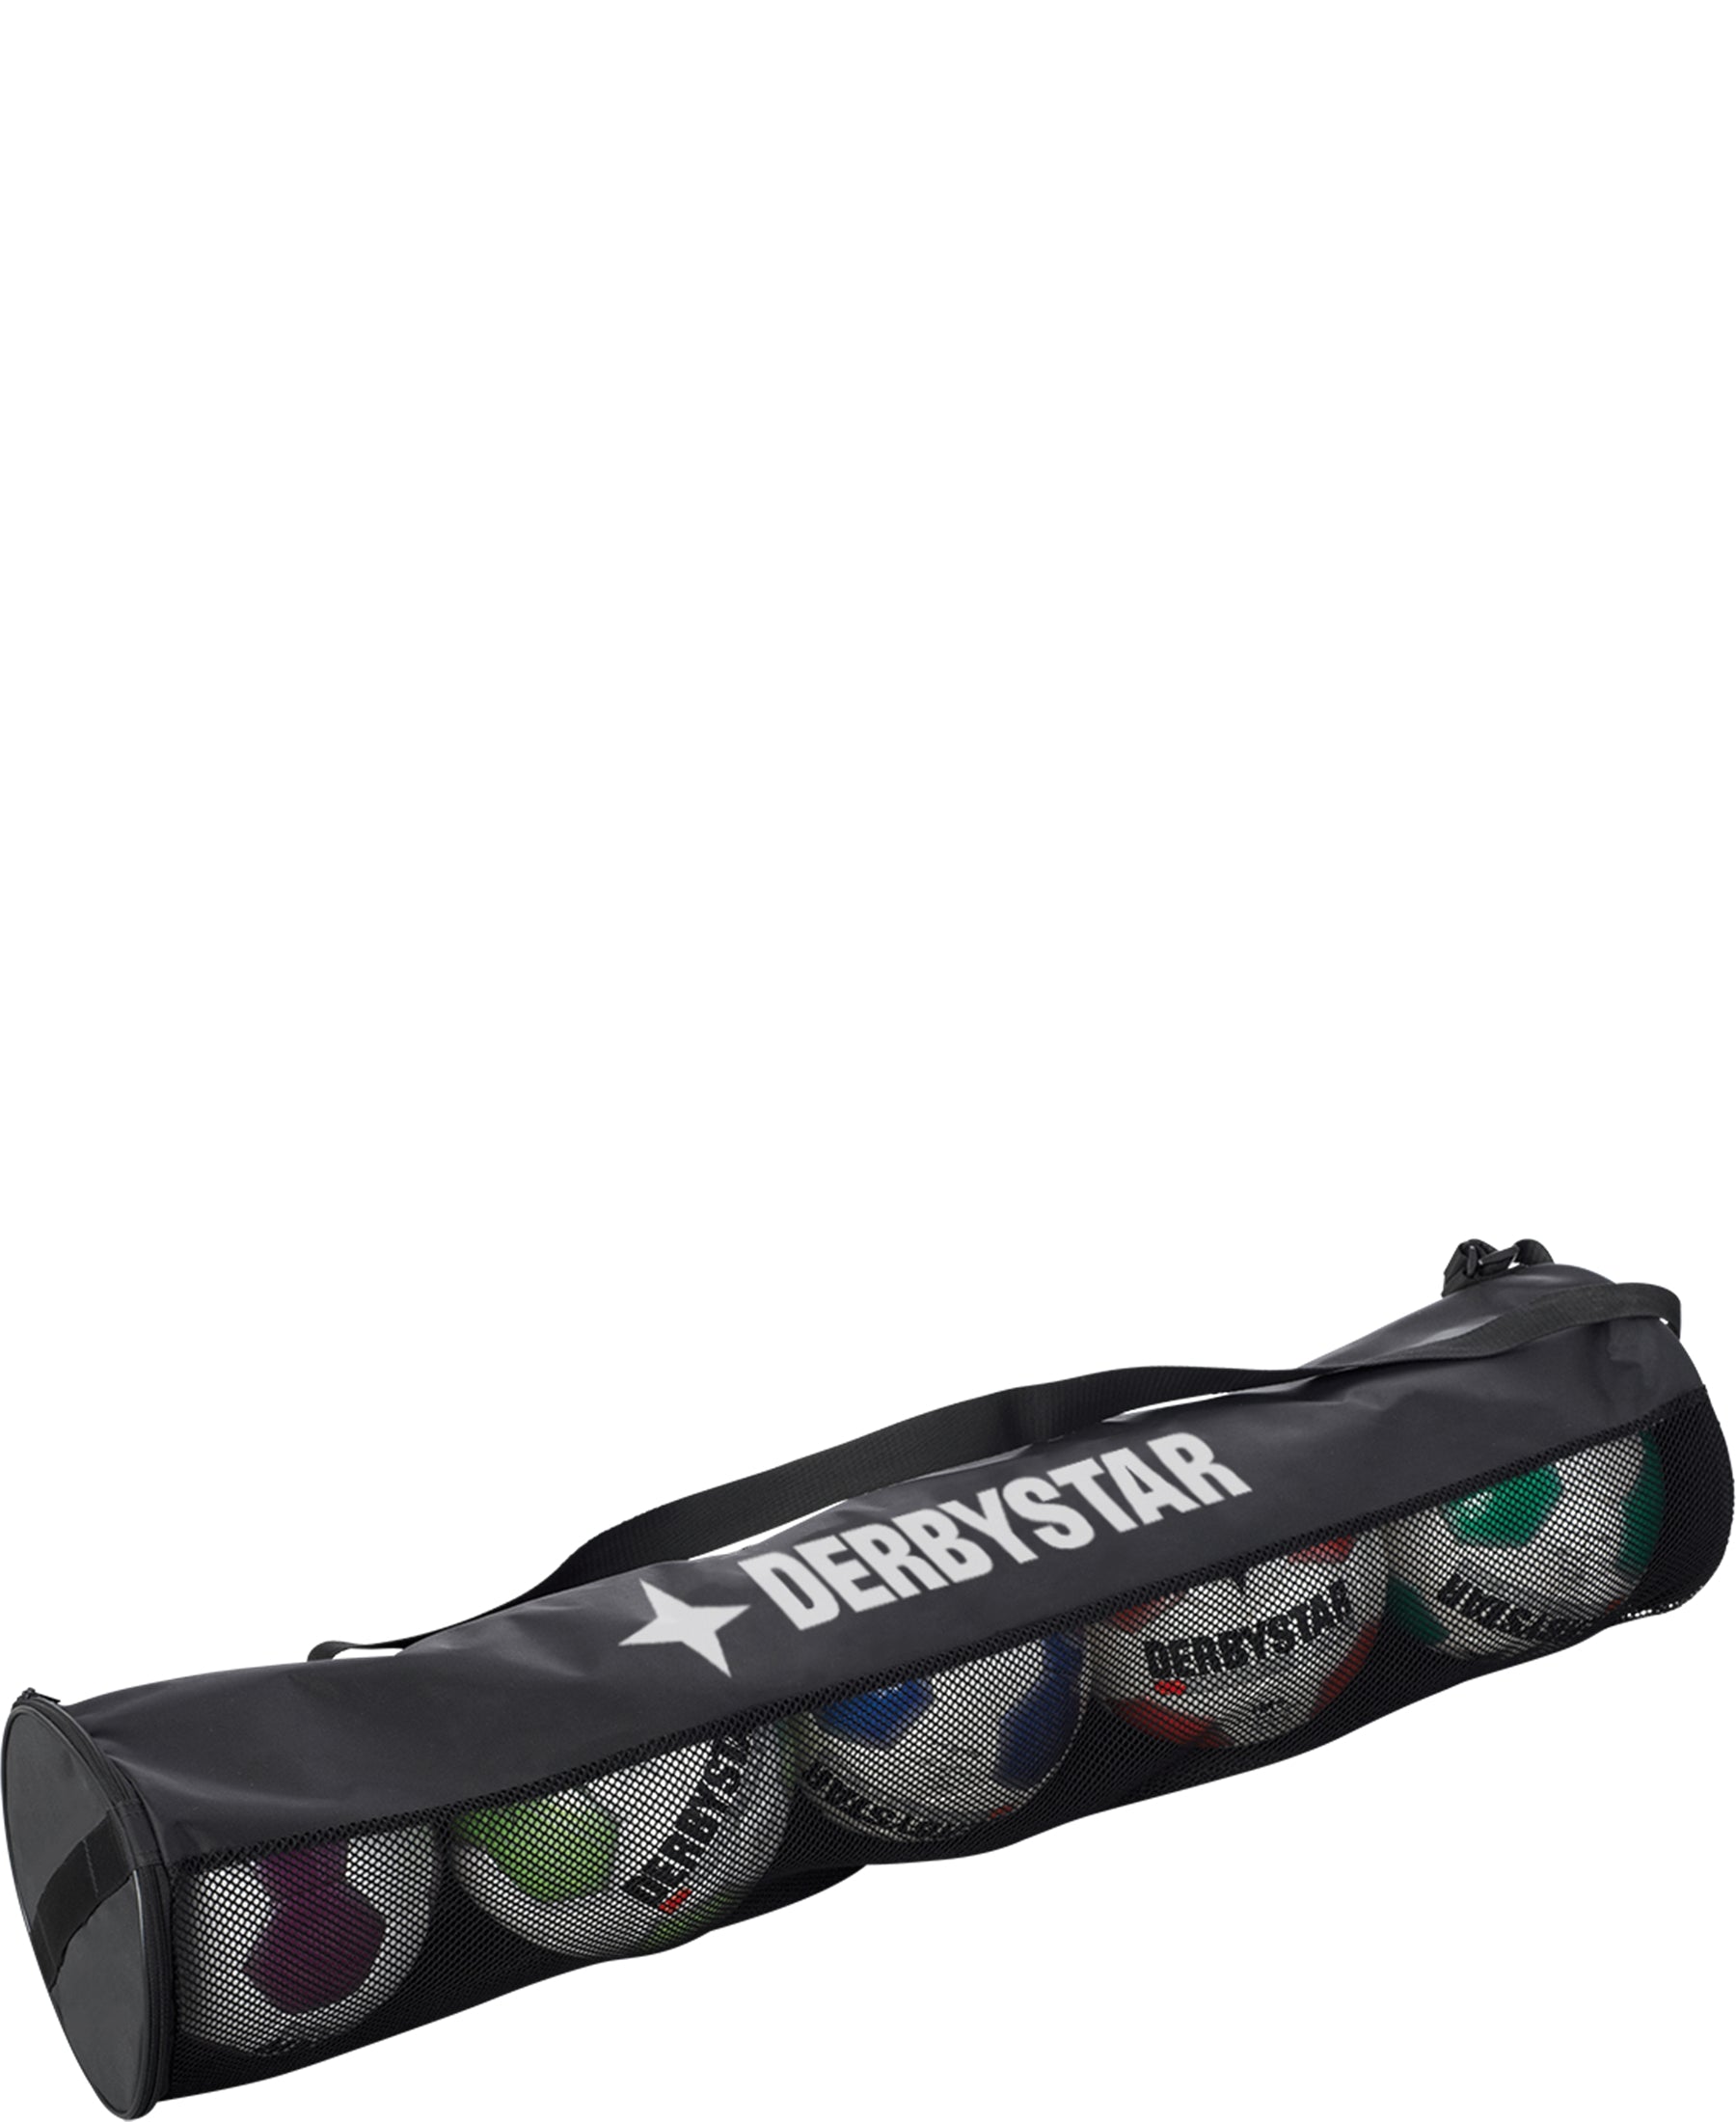 Der Derbystar Carry Bag Logo Ballschlauch transportiert bis zu 5 Bälle sicher und bequem. Ideal für Training und Spiele. Strapazierfähig und praktisch. Erhältlich bei SHOP4TEAMSPORT.